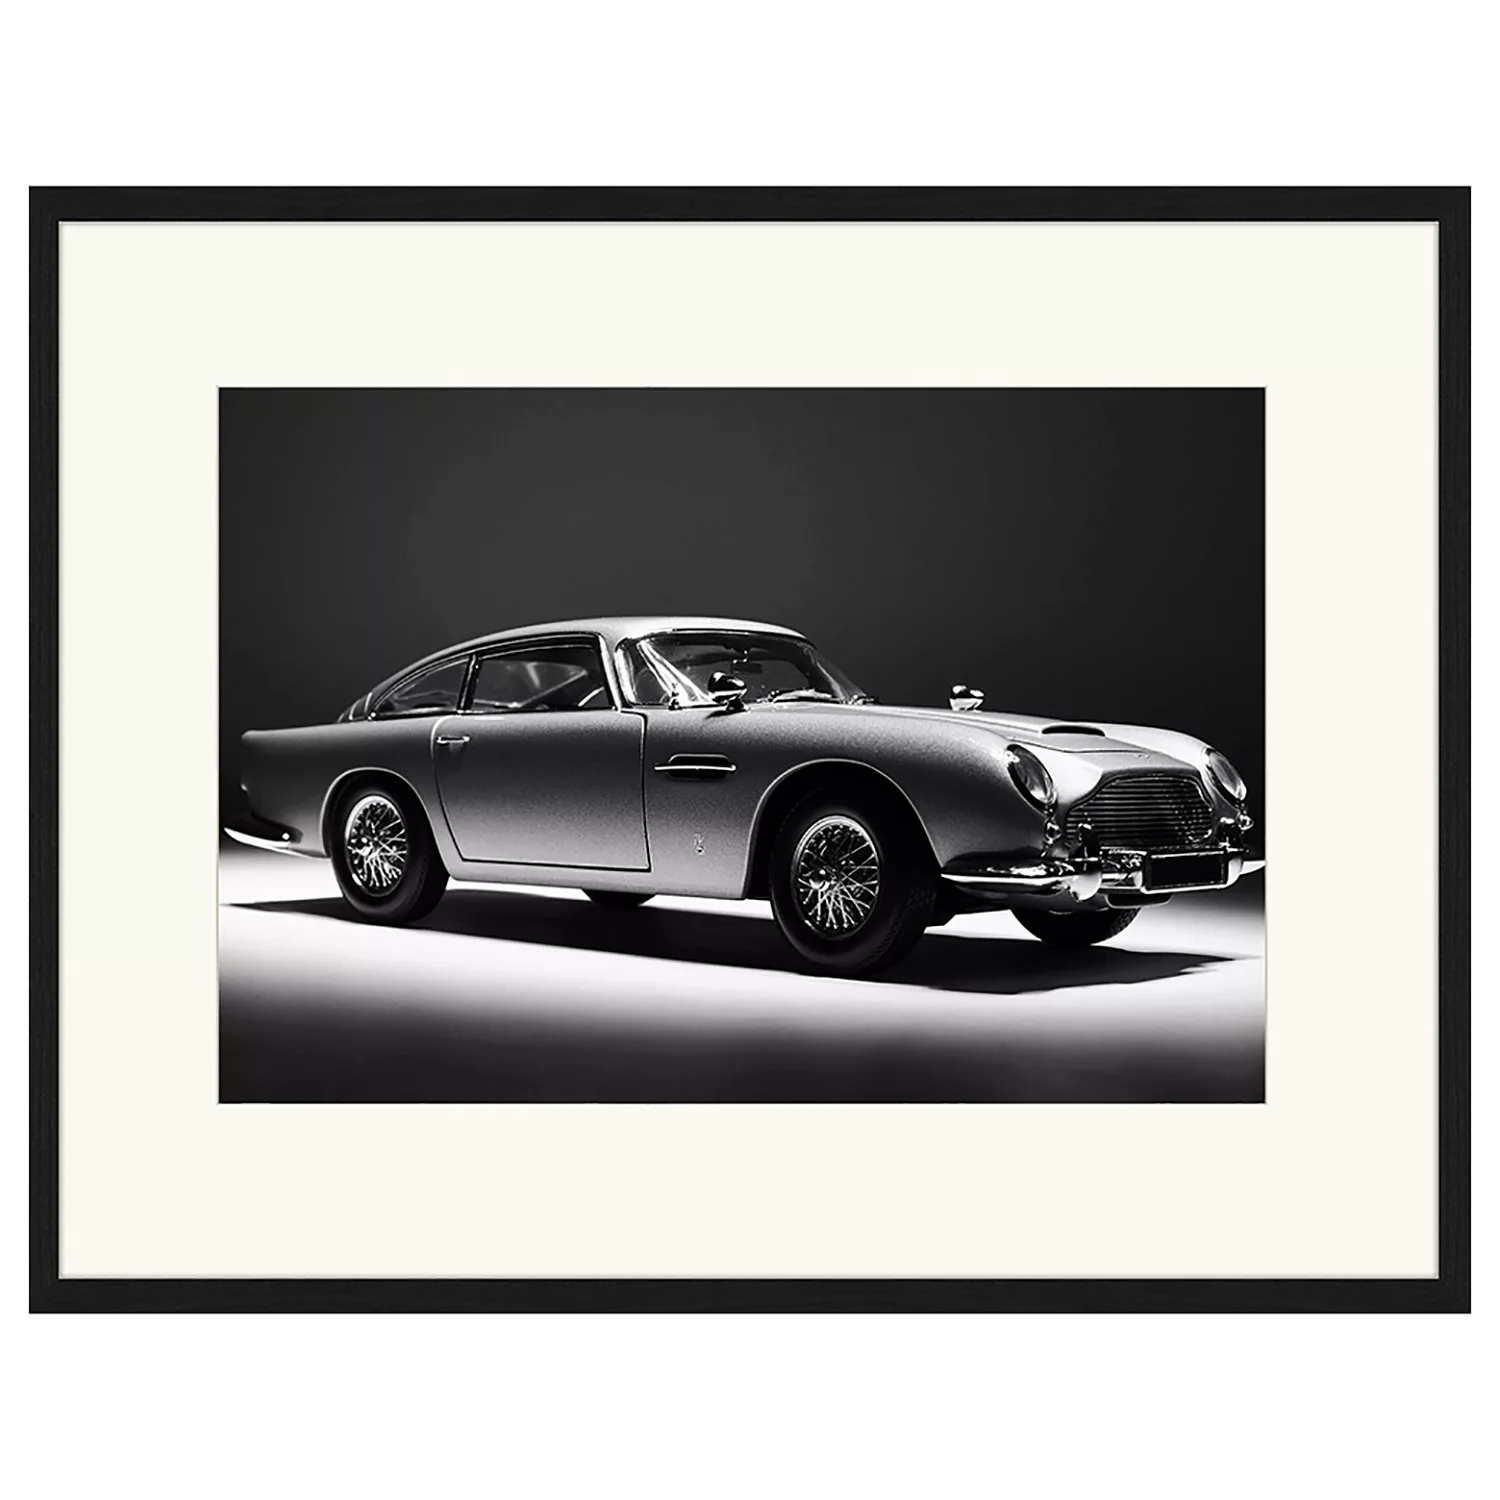 home24 Bild Aston Martin B5 günstig online kaufen